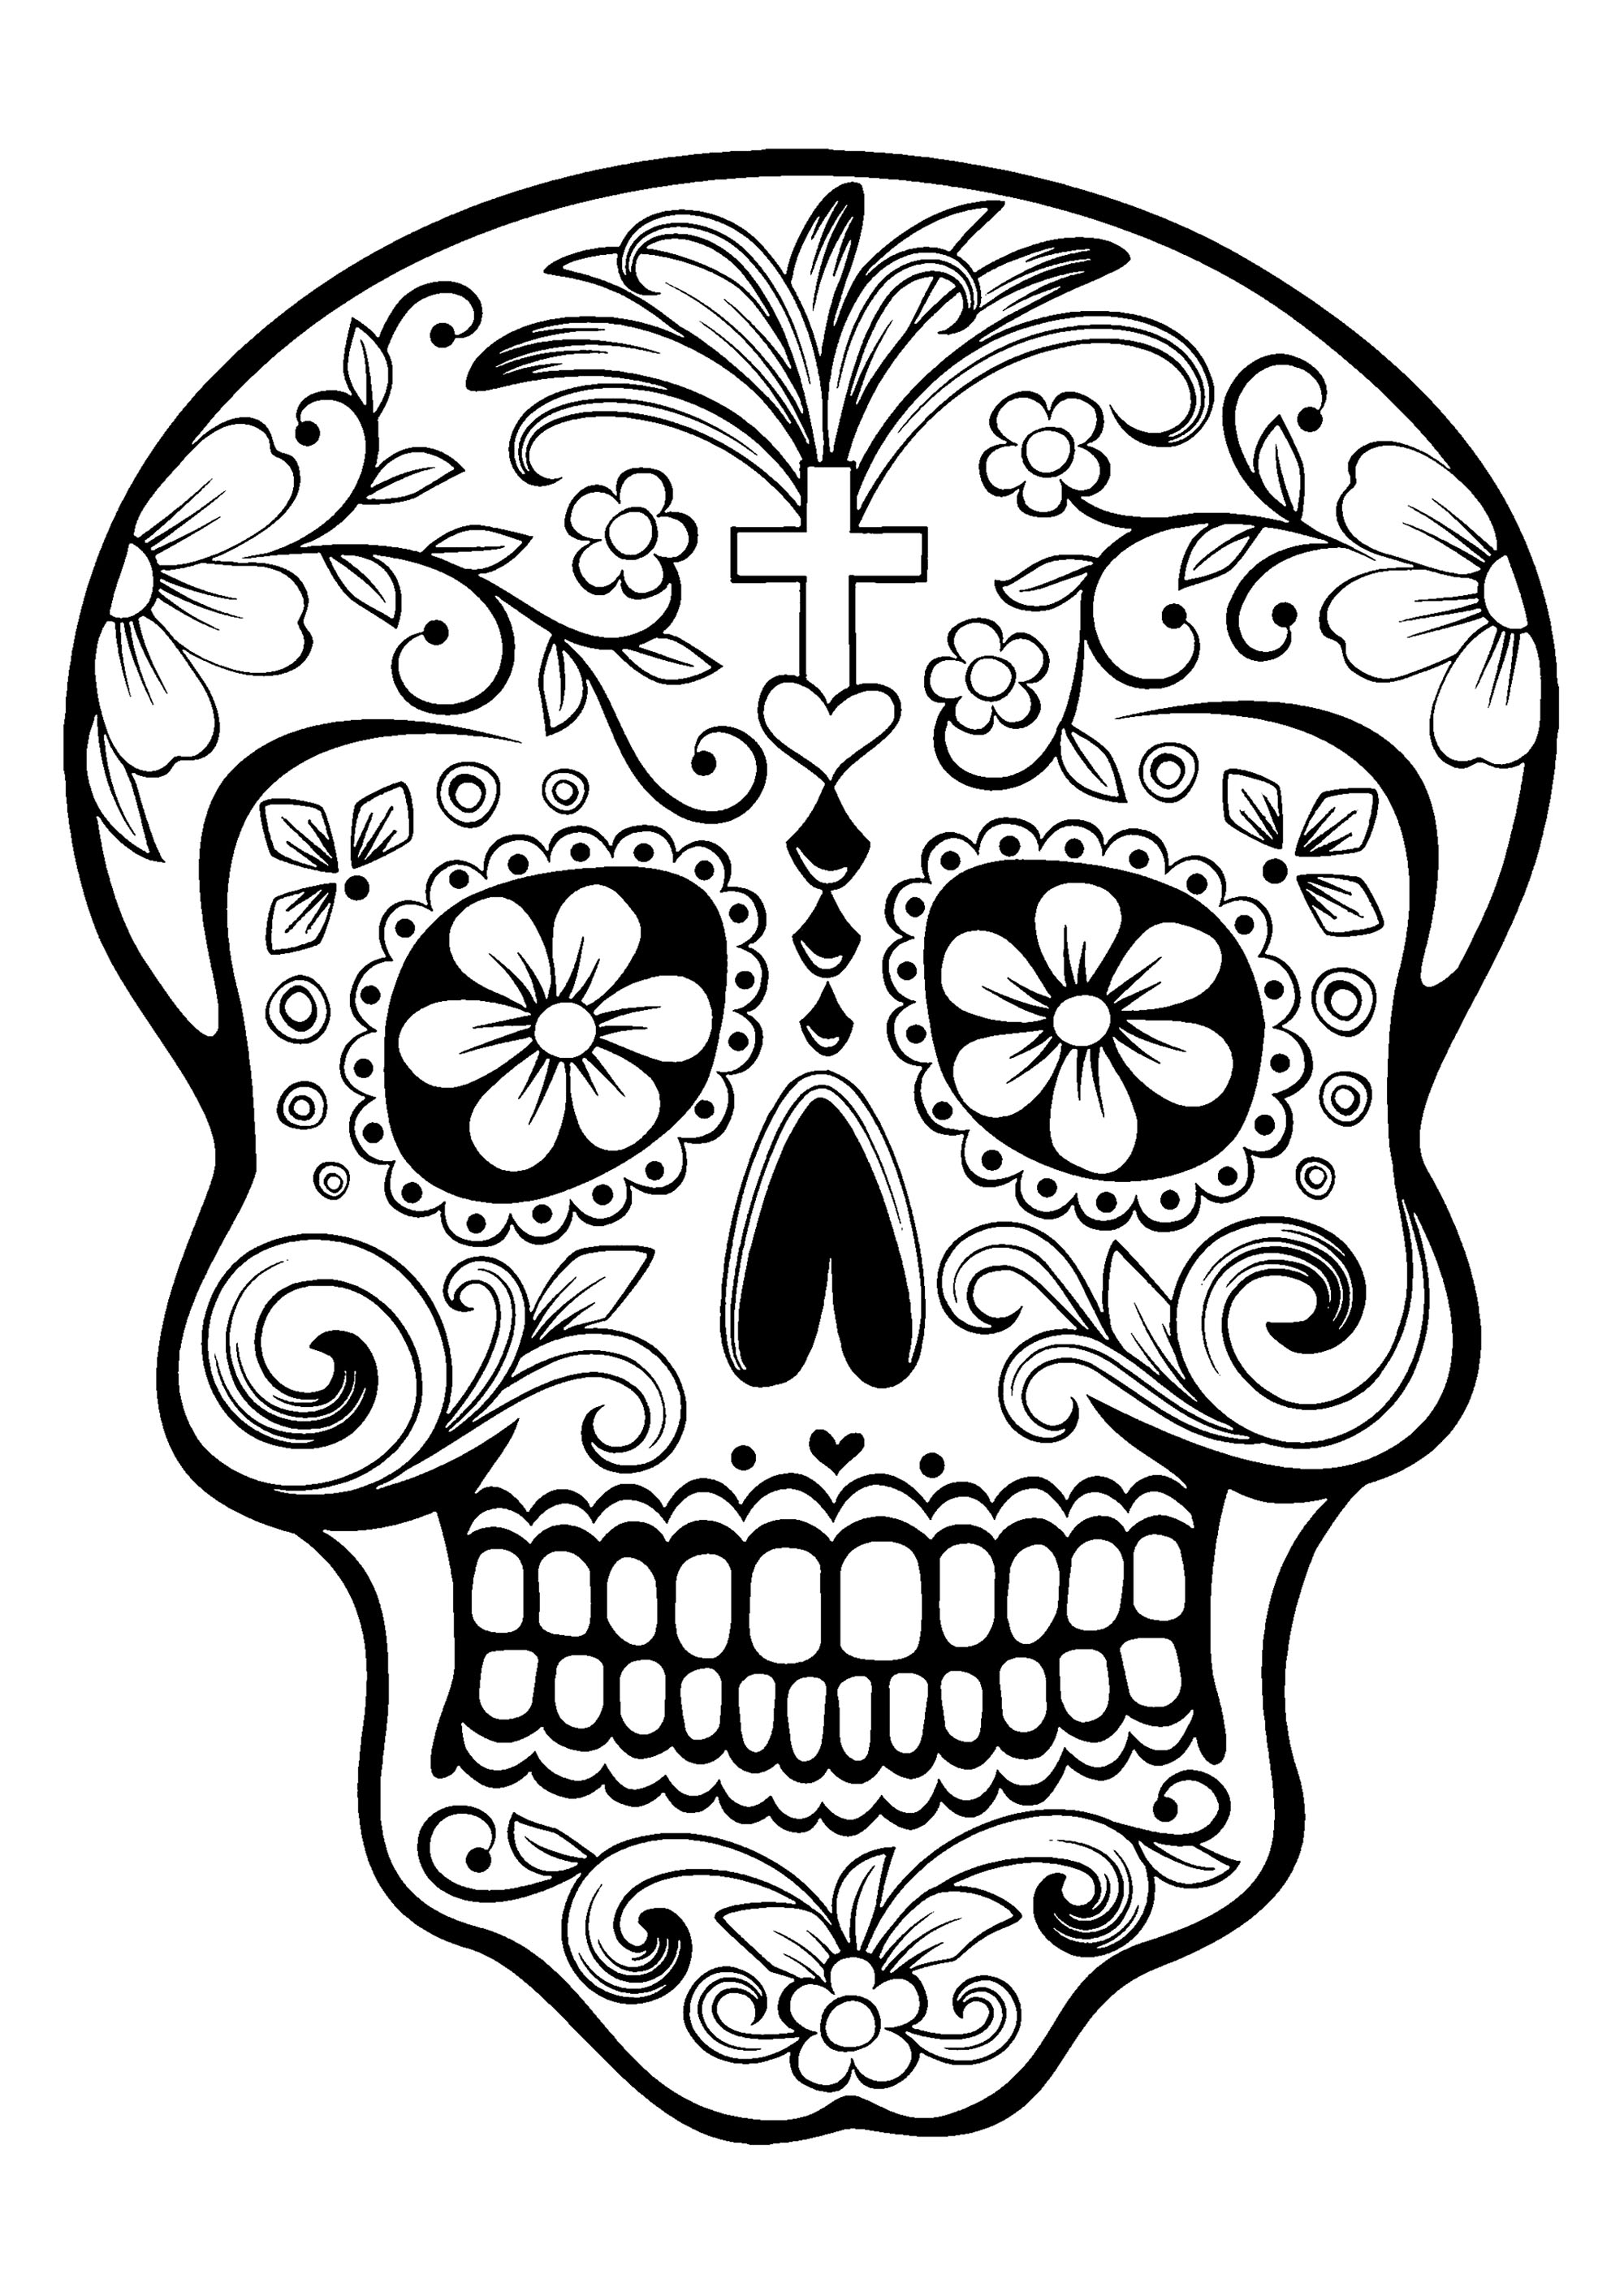 El Dia De Los Muertos 1 El D a De Los Muertos Adult Coloring Pages